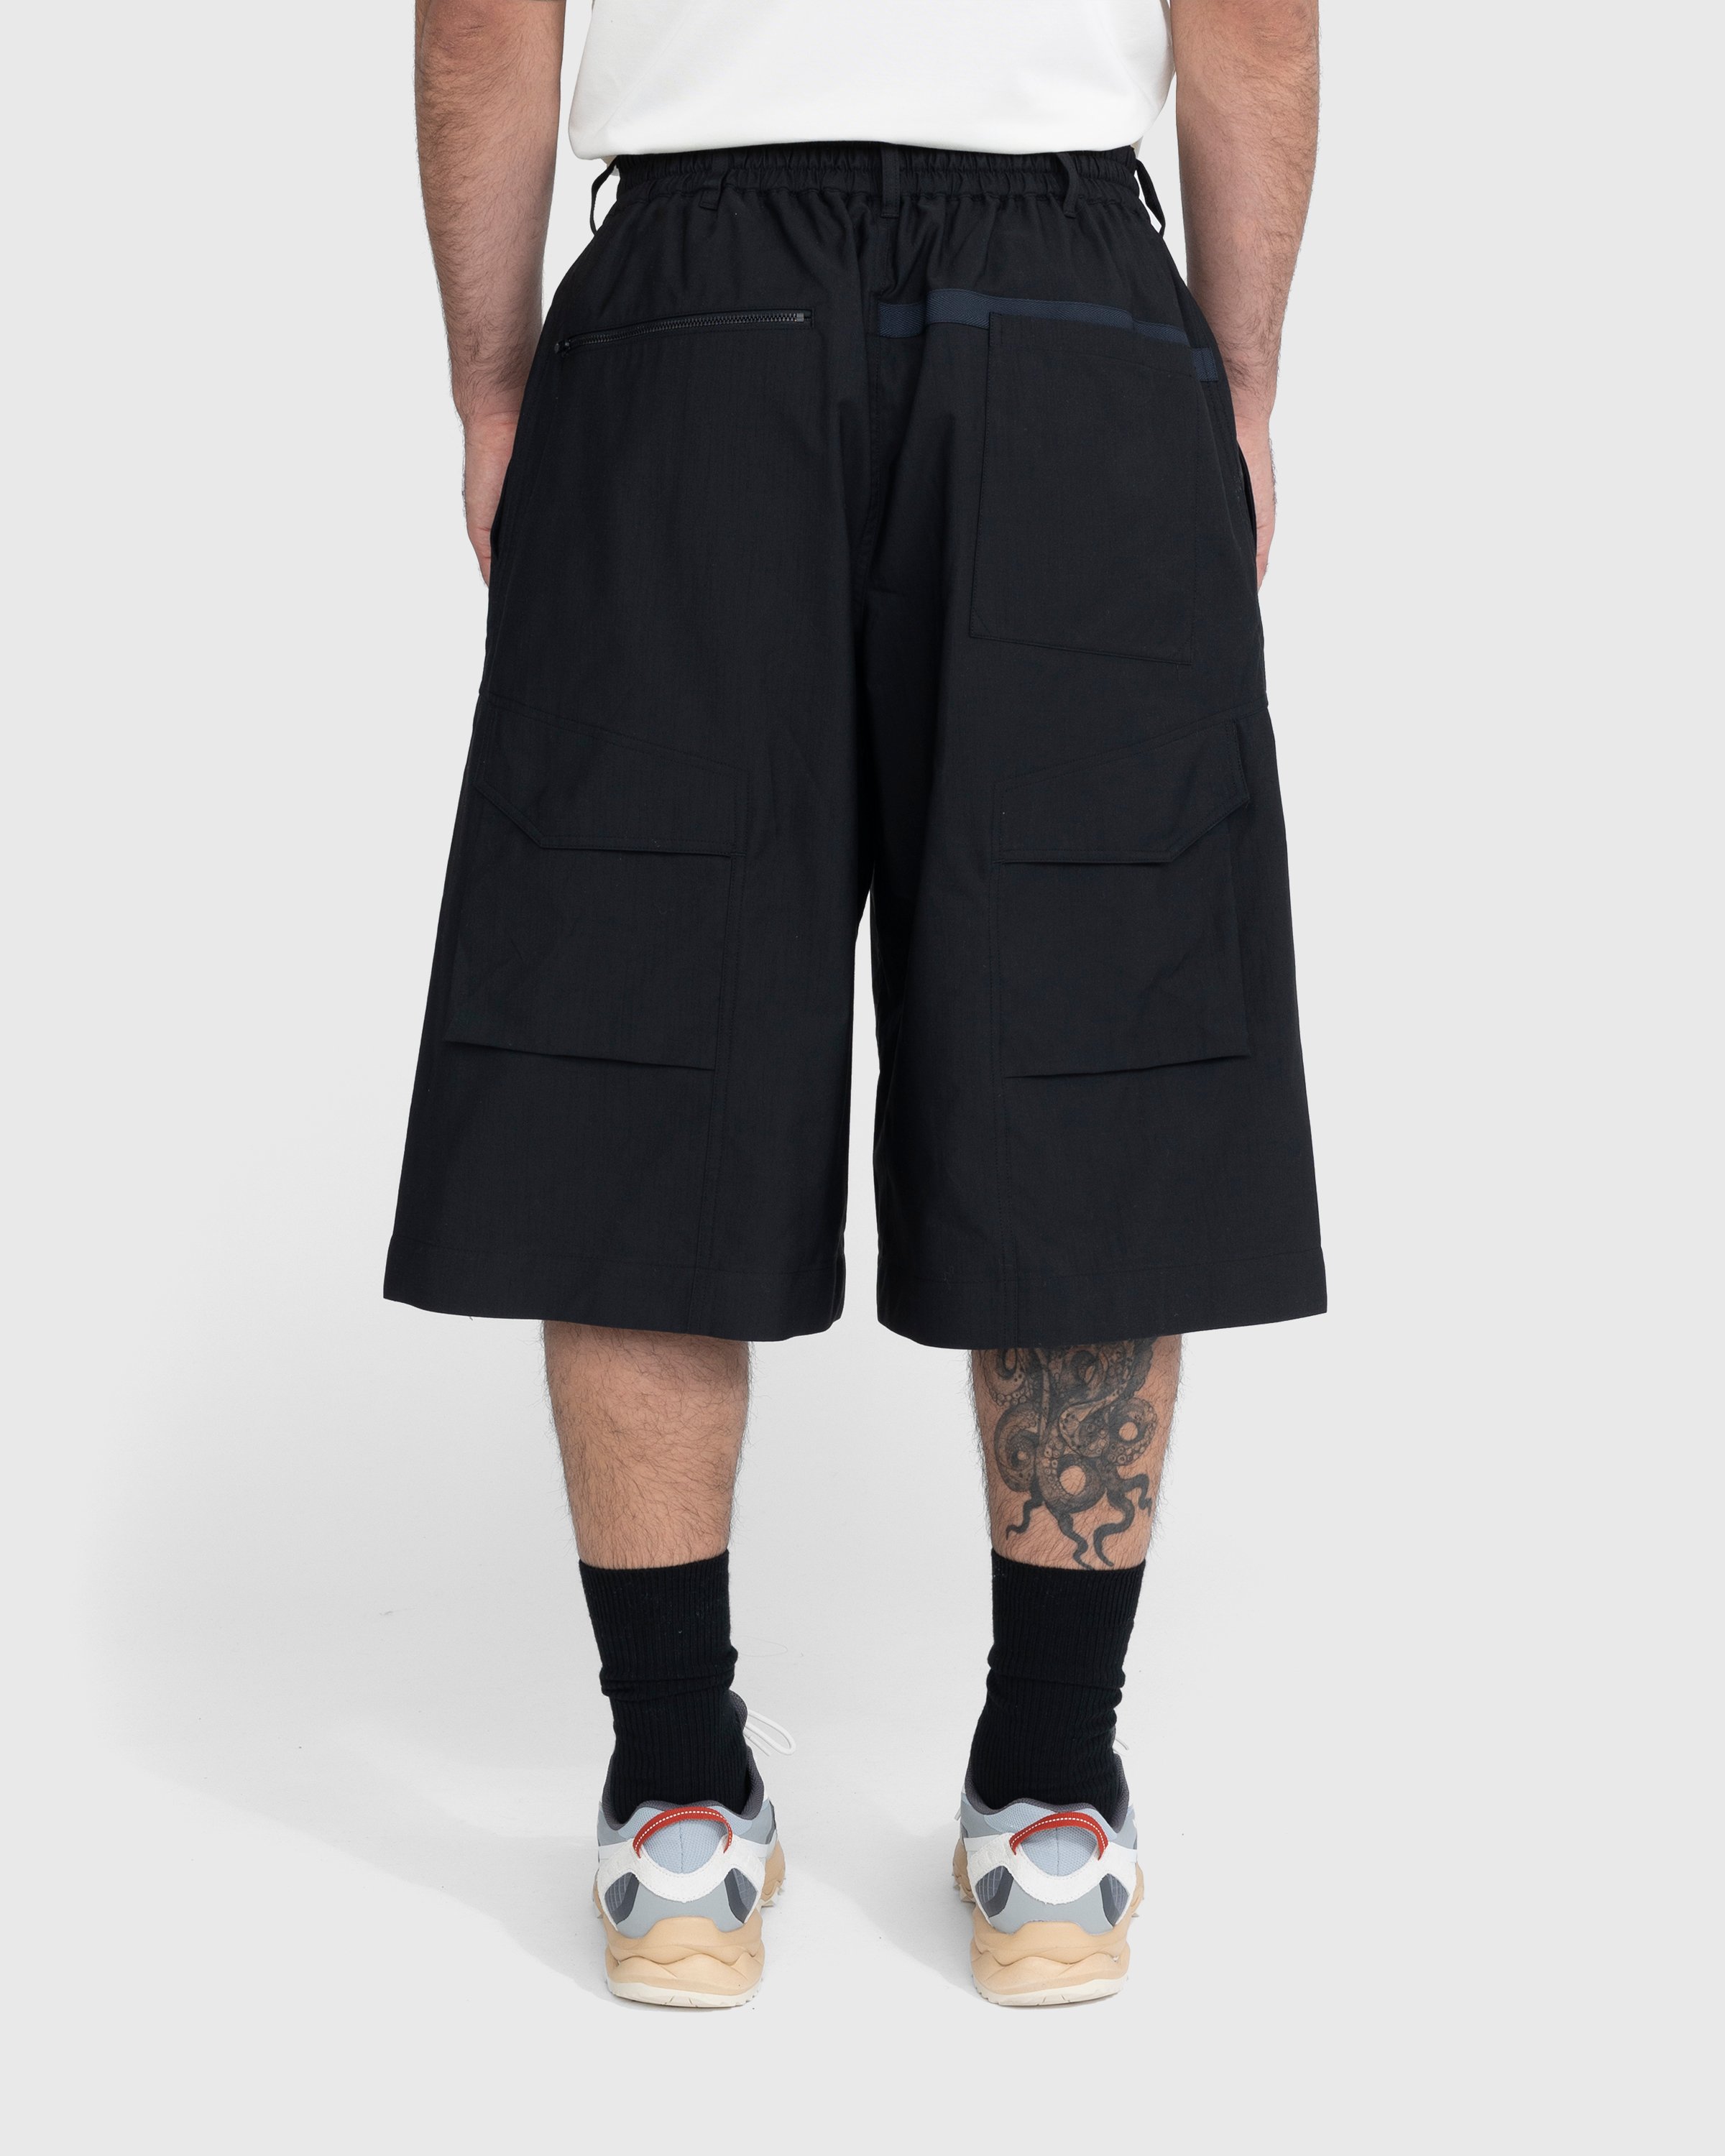 Y-3 - Workwear Shorts Black - Clothing - Black - Image 3